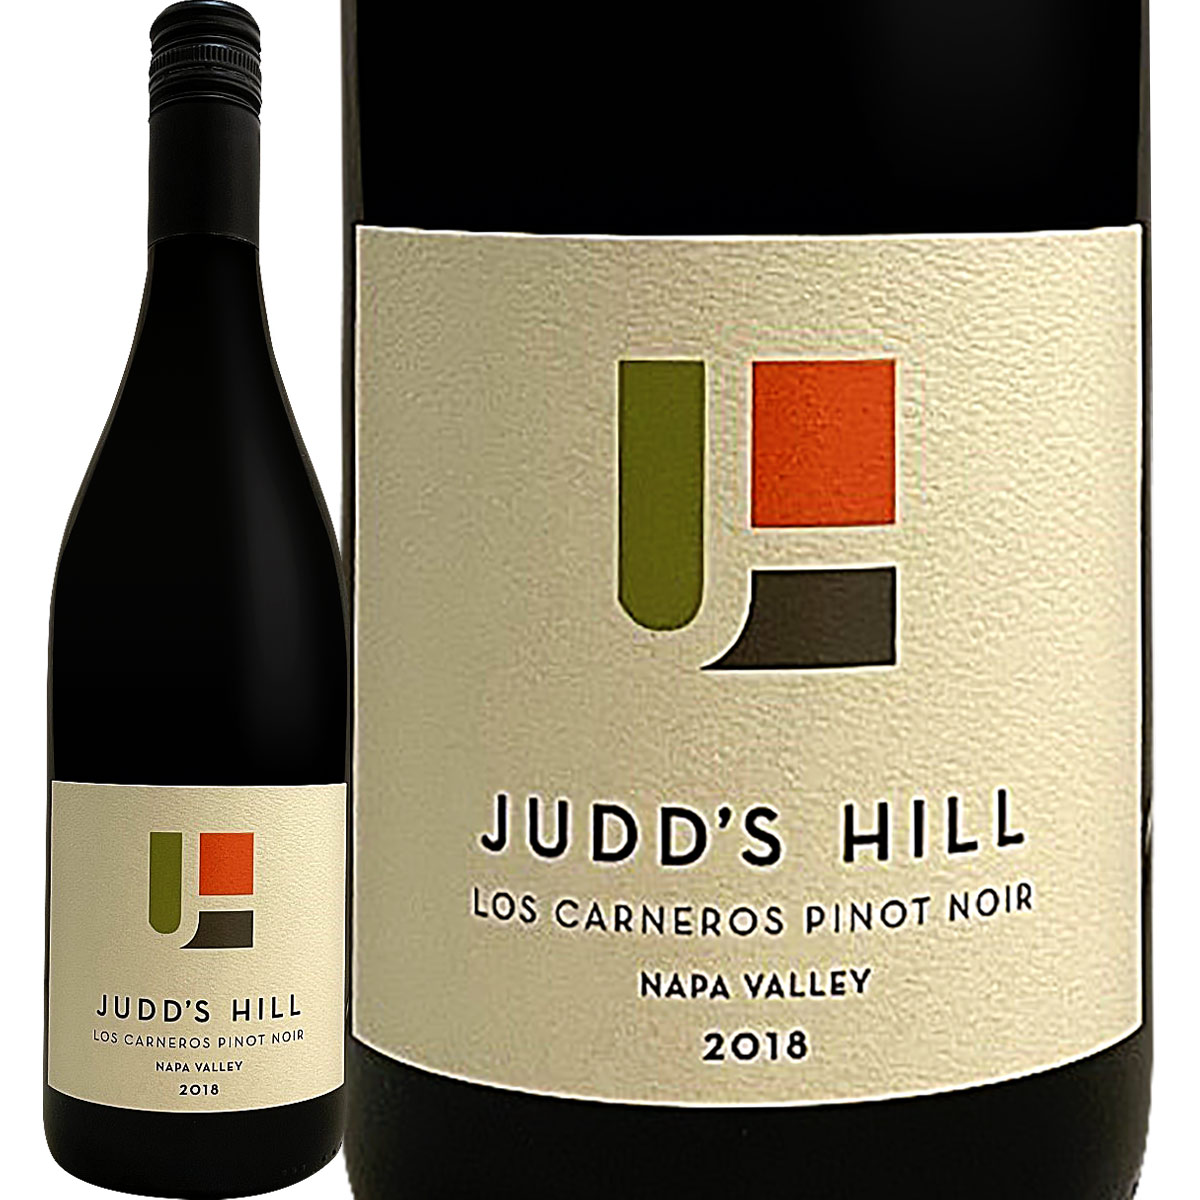 ジャッズ・ヒル・ロス・カーネロス・ピノ・ノワール2018【アメリカ】【カリフォルニア】【ナパ・ヴァレー】【辛口】【特価】【赤ワイン】【蔵出し】【Judd's Hill】【カーネロス】